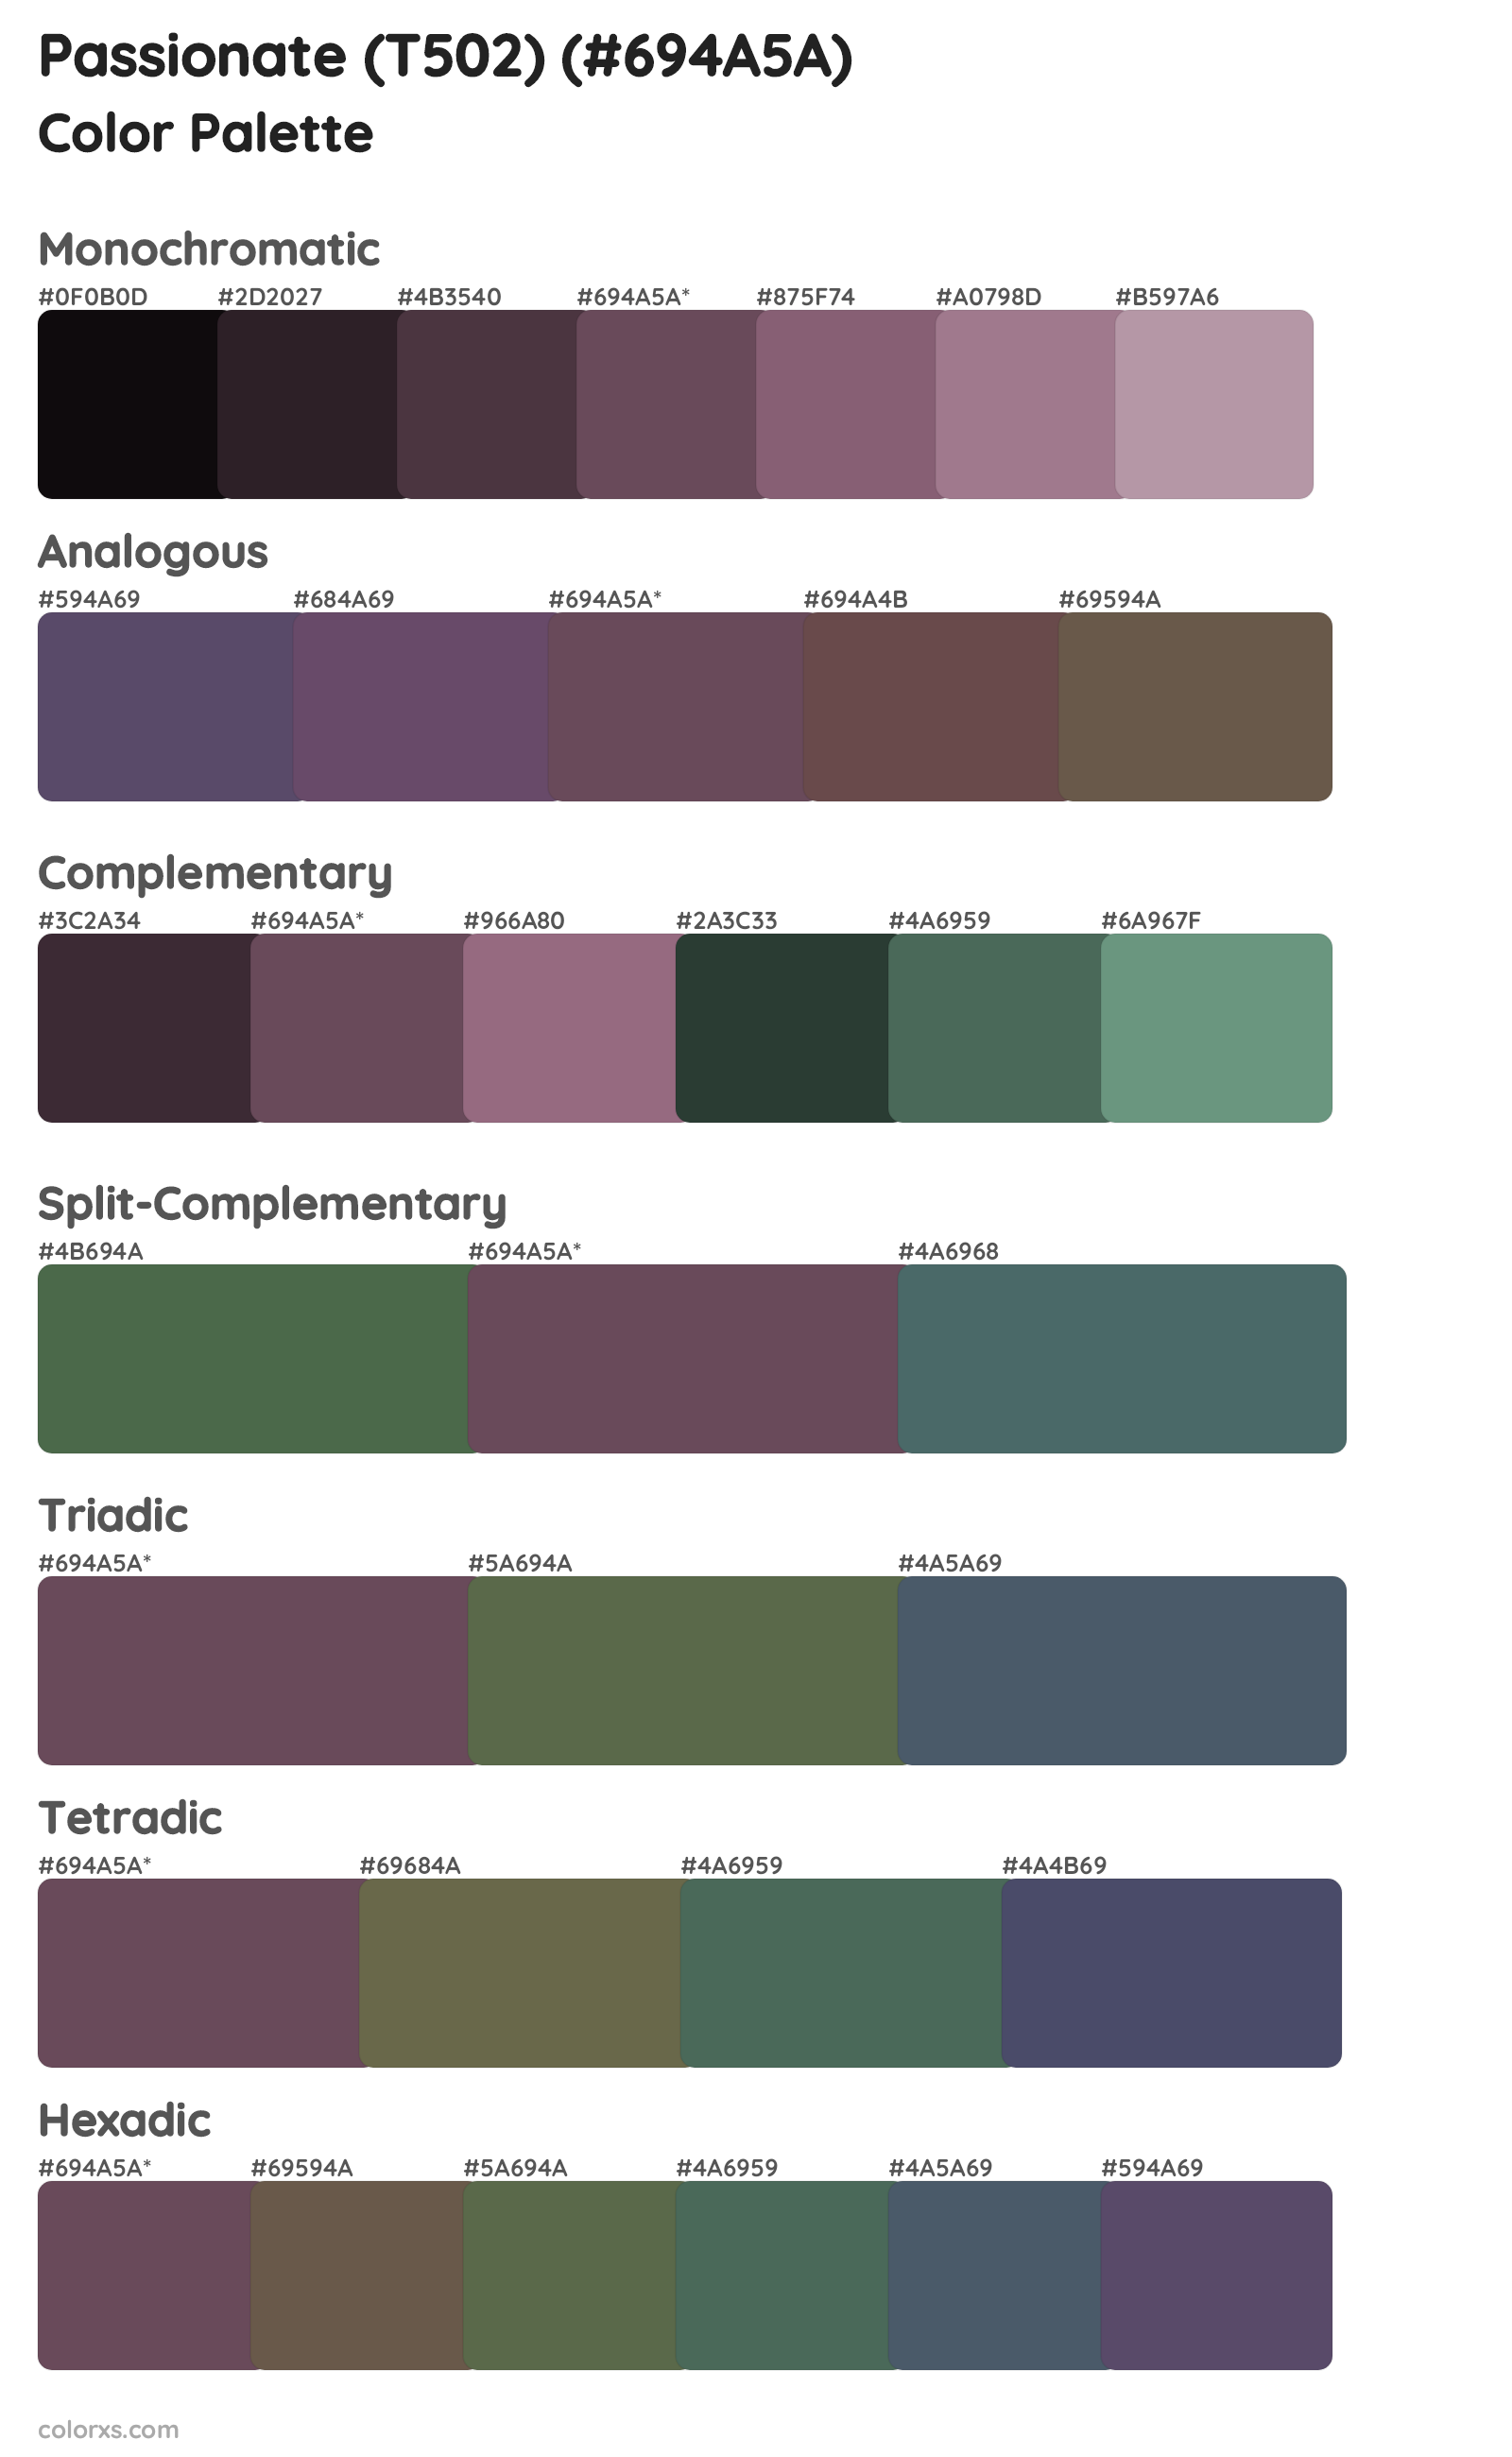 Passionate (T502) Color Scheme Palettes